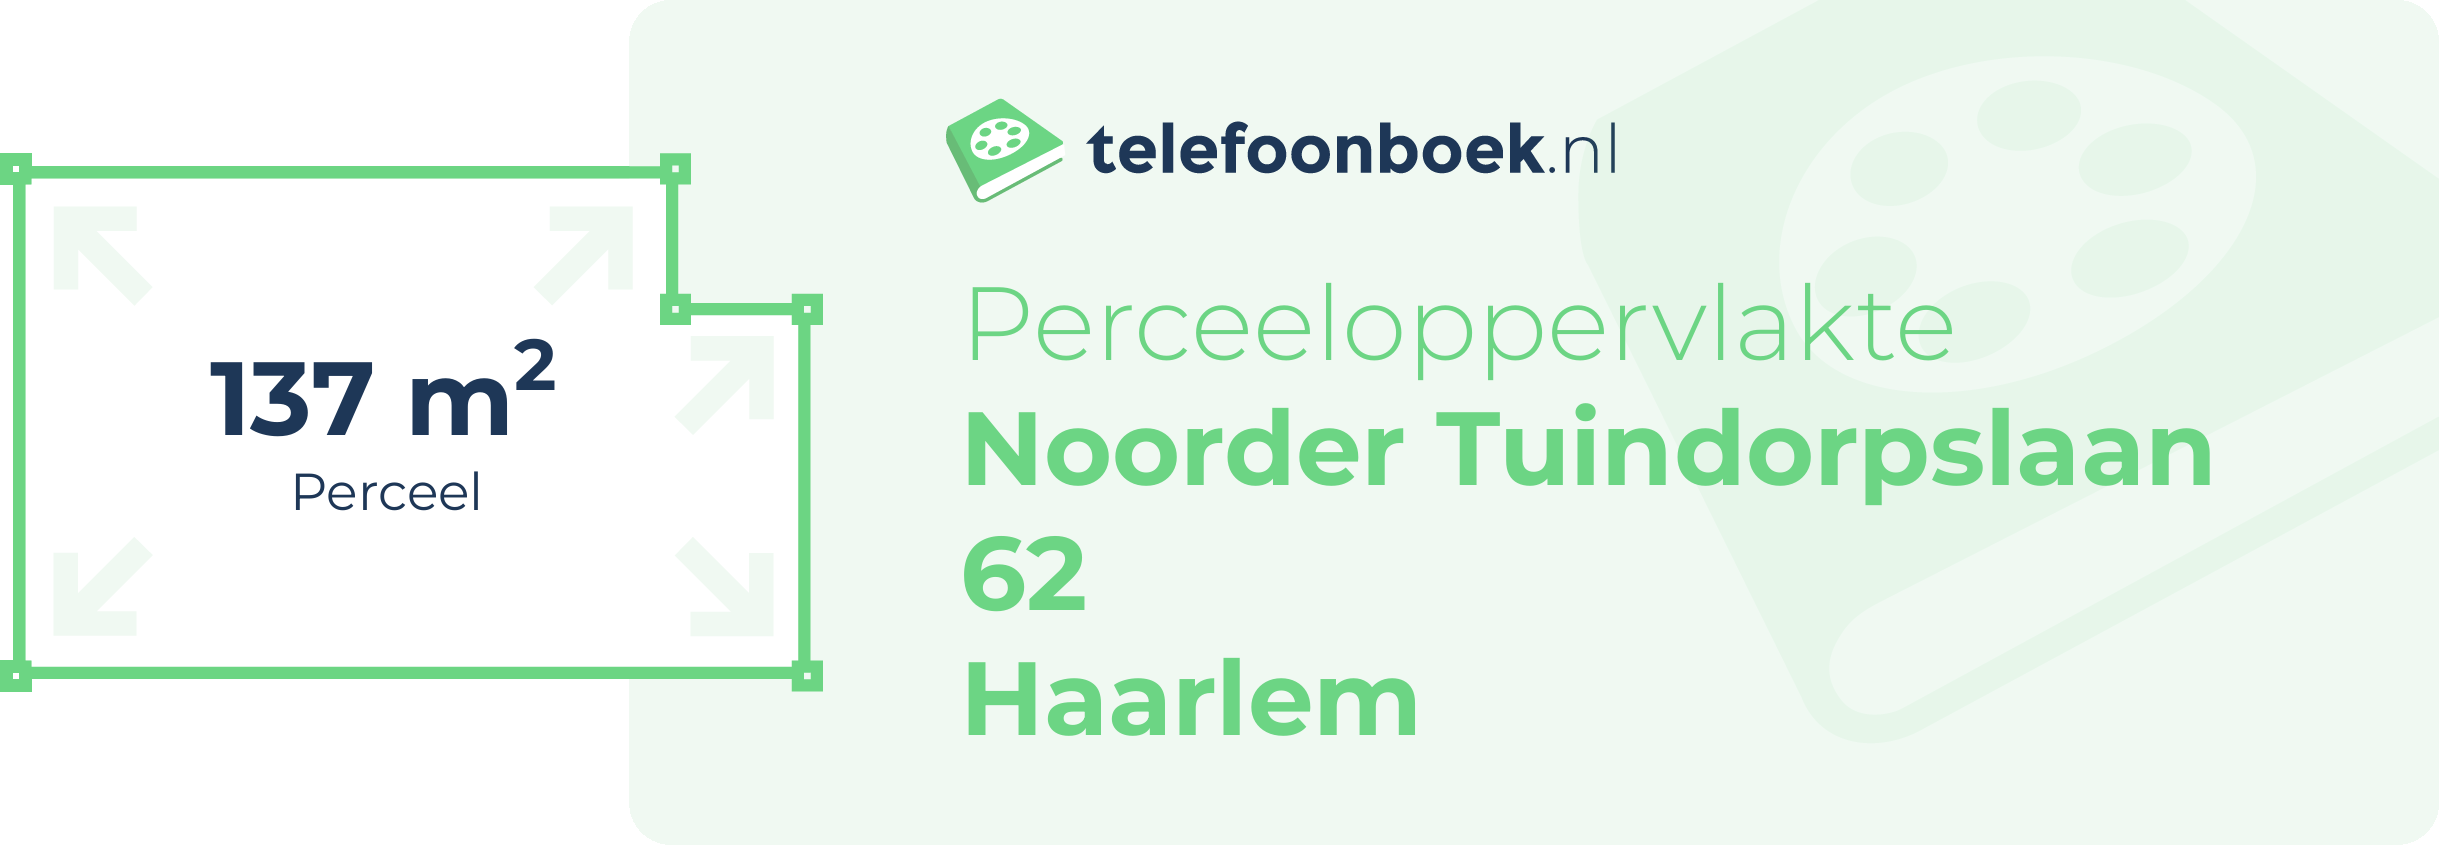 Perceeloppervlakte Noorder Tuindorpslaan 62 Haarlem